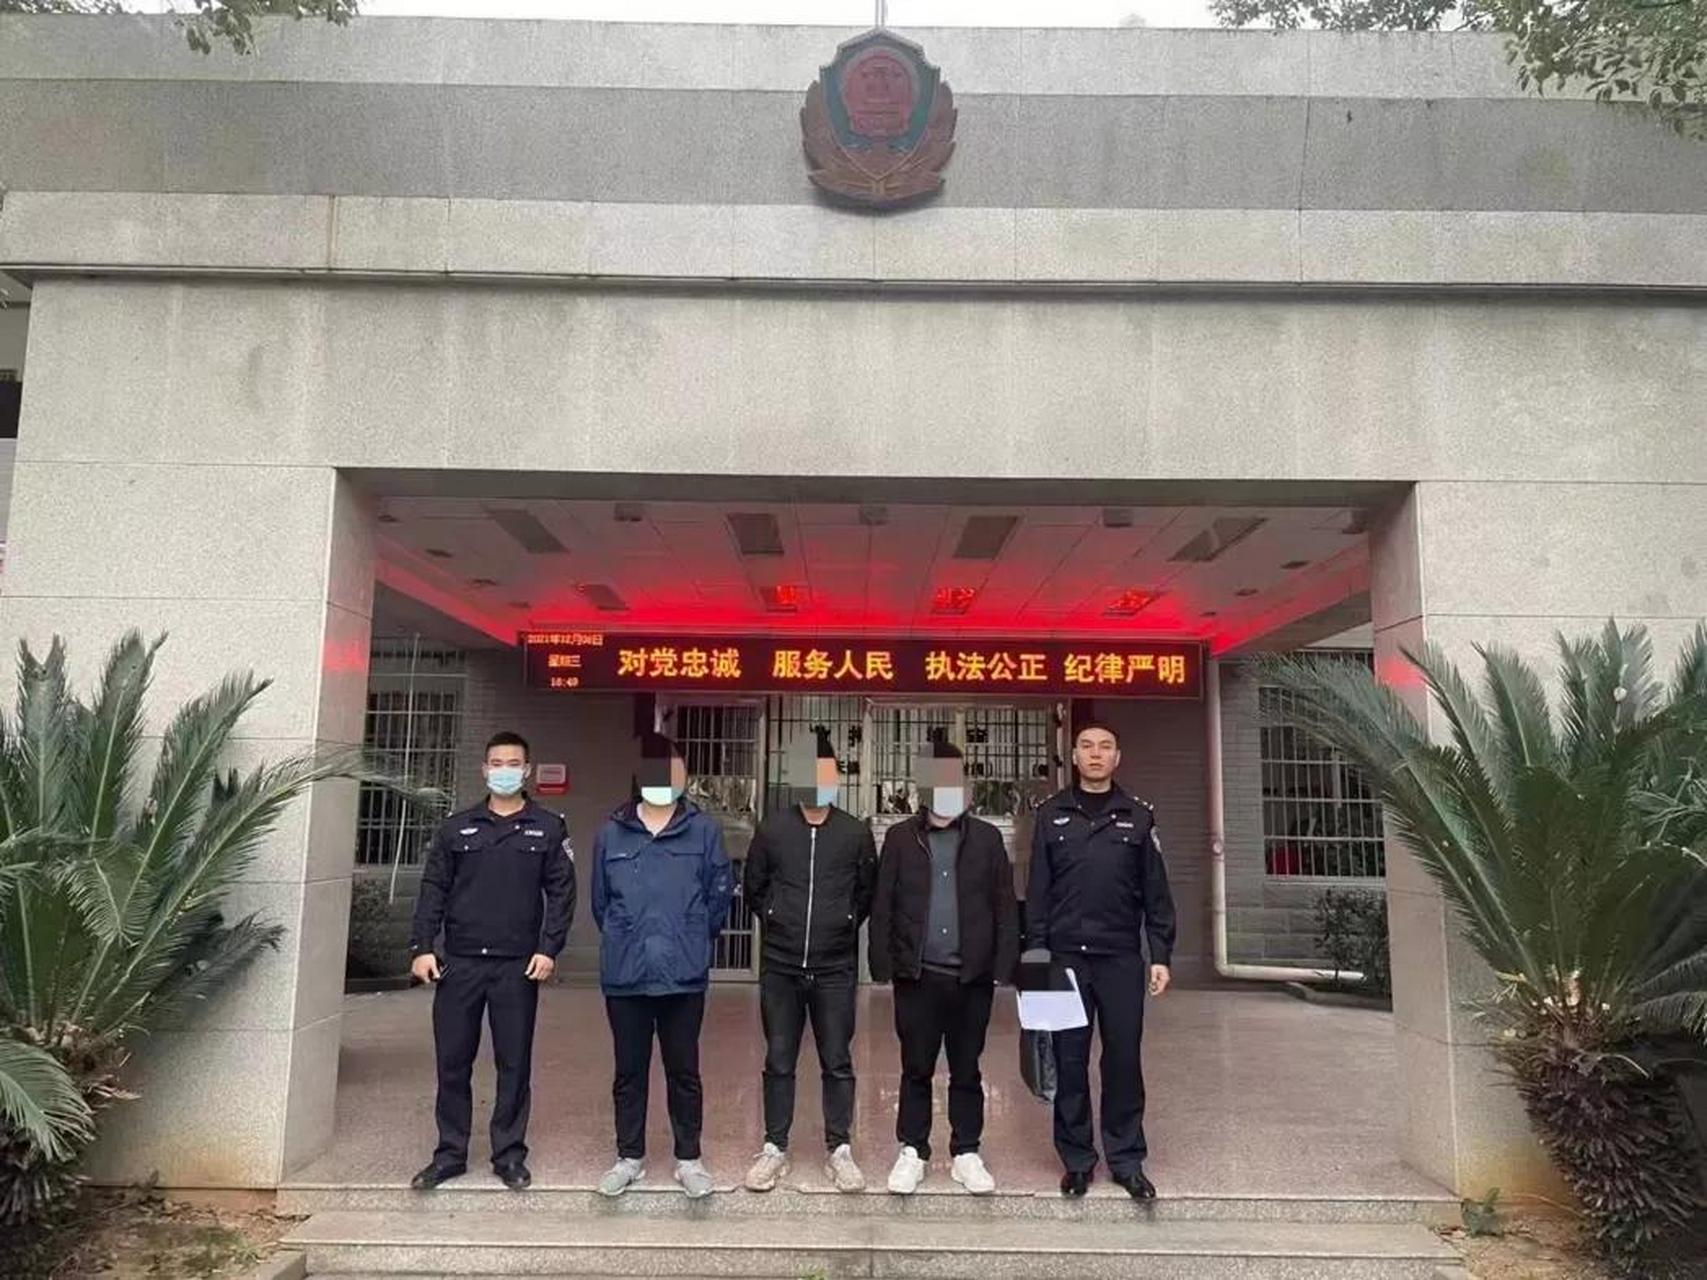 12月8日,石门县公安局蒙泉派出所在蒙泉镇抓获帮助信息网络犯罪活动